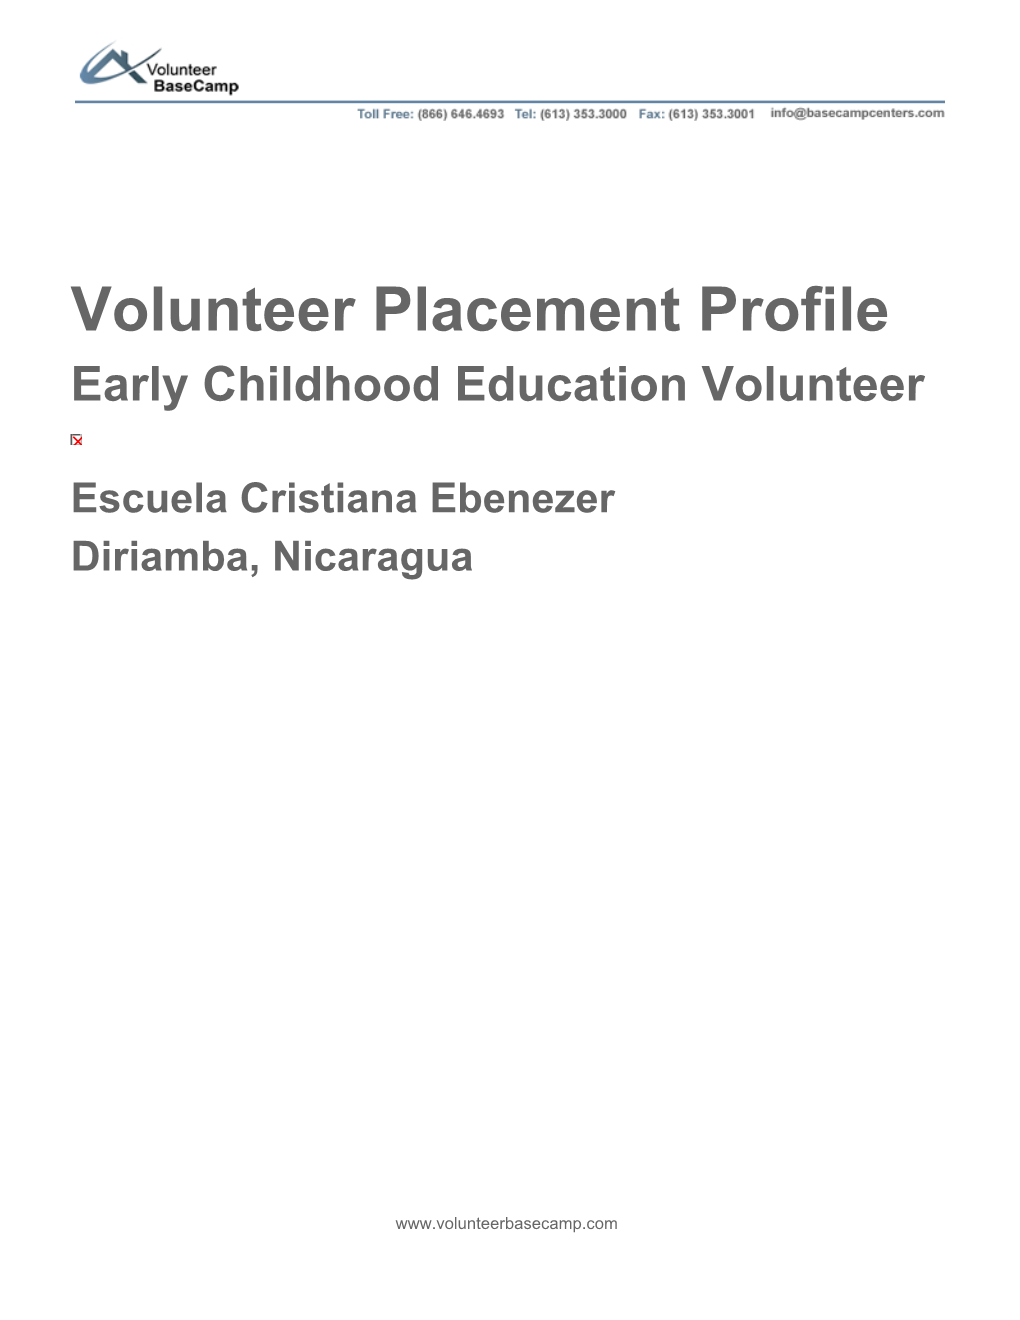 Volunteer Placement Profile Early Childhood Education Volunteer